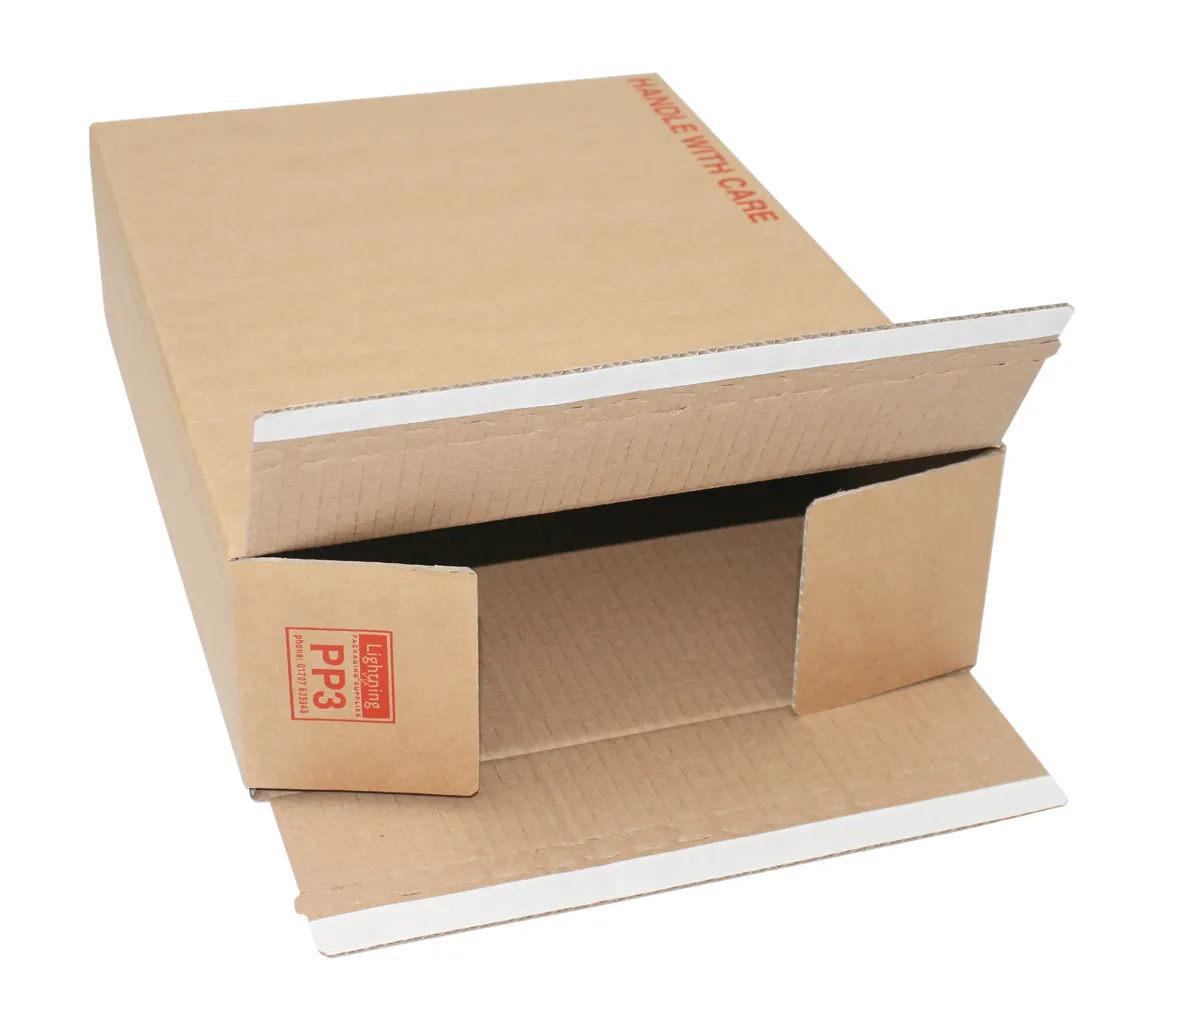 Özel kraft kağıdı kutu ambalaj karton posta kendini mühür giyim markası için posta gönderim kutusu ambalaj kutuları